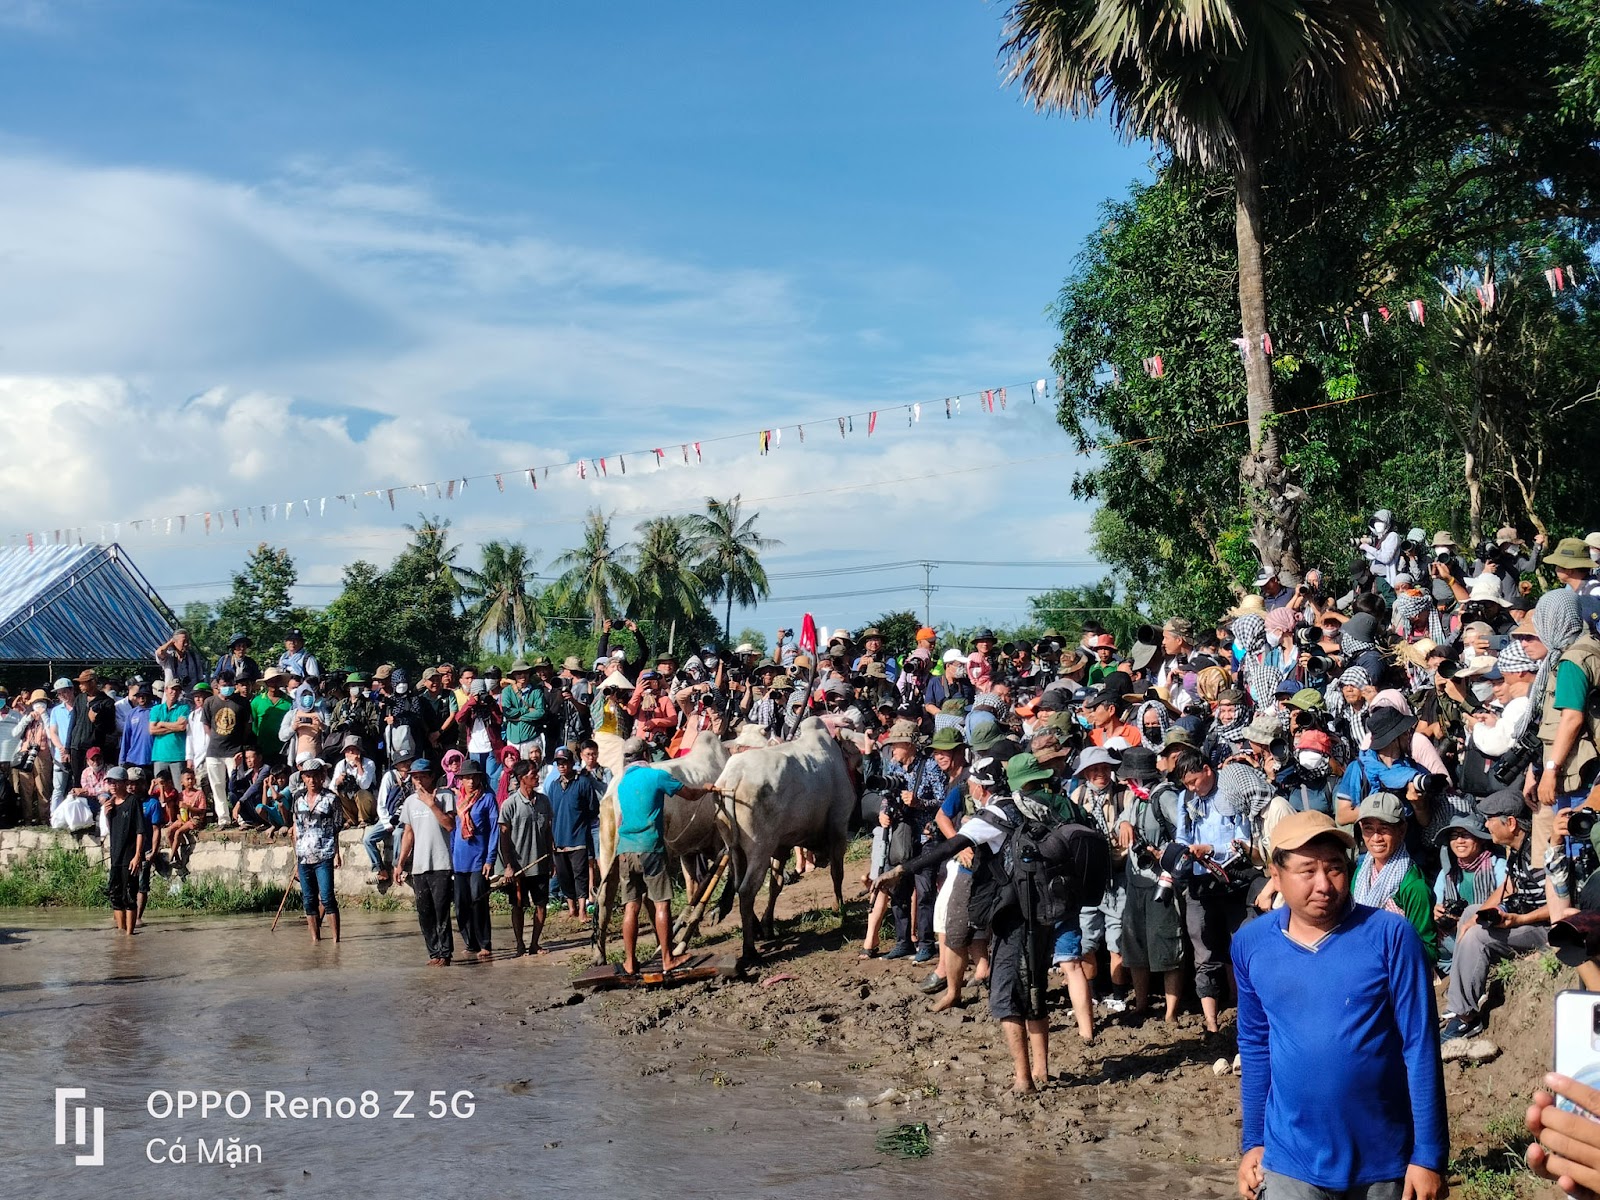 Chiêm ngưỡng lễ hội đua bò của đồng bào Khmer qua ống kính OPPO Reno8 Z 5G - 5pNDhgYfYvVG7PGVuskb1EmYDt6LV8 dUgPiaMtMIn1iBIx7dBeXGj4mlCH0iKjbp cA8GqUapcZ pskxtjEmXj UytAxDCo